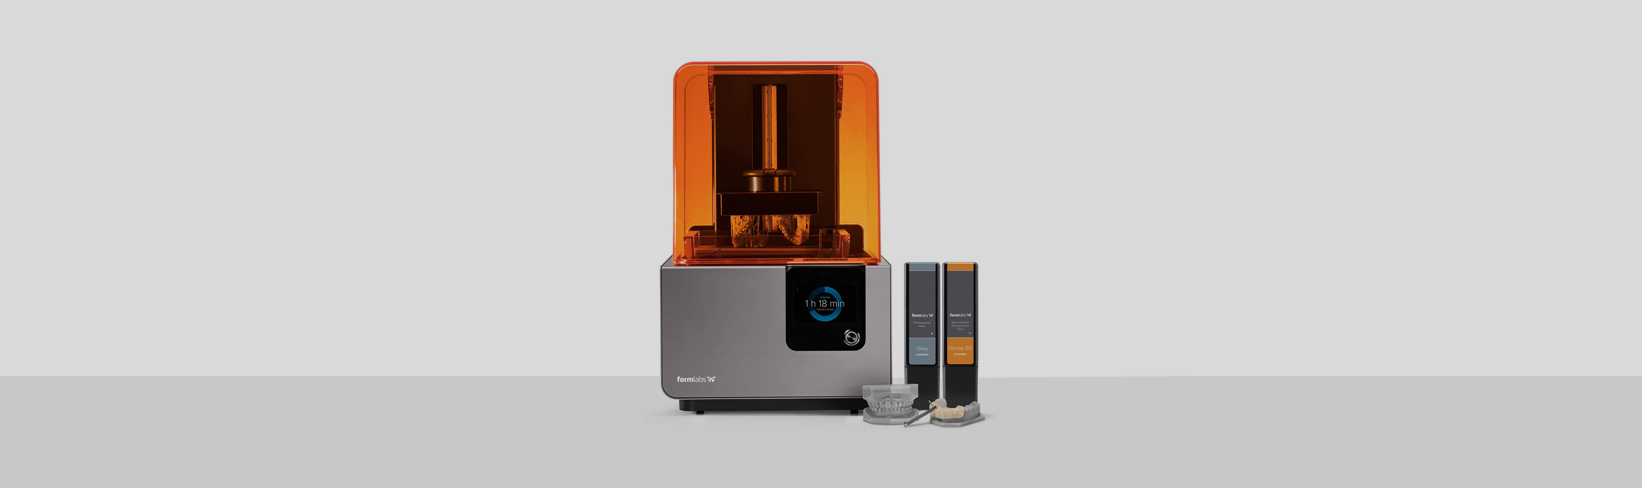 La impresora 3D de Ortodoncia Tres Torres Barcelona imprime físicamente en resina el modelo dental virtual